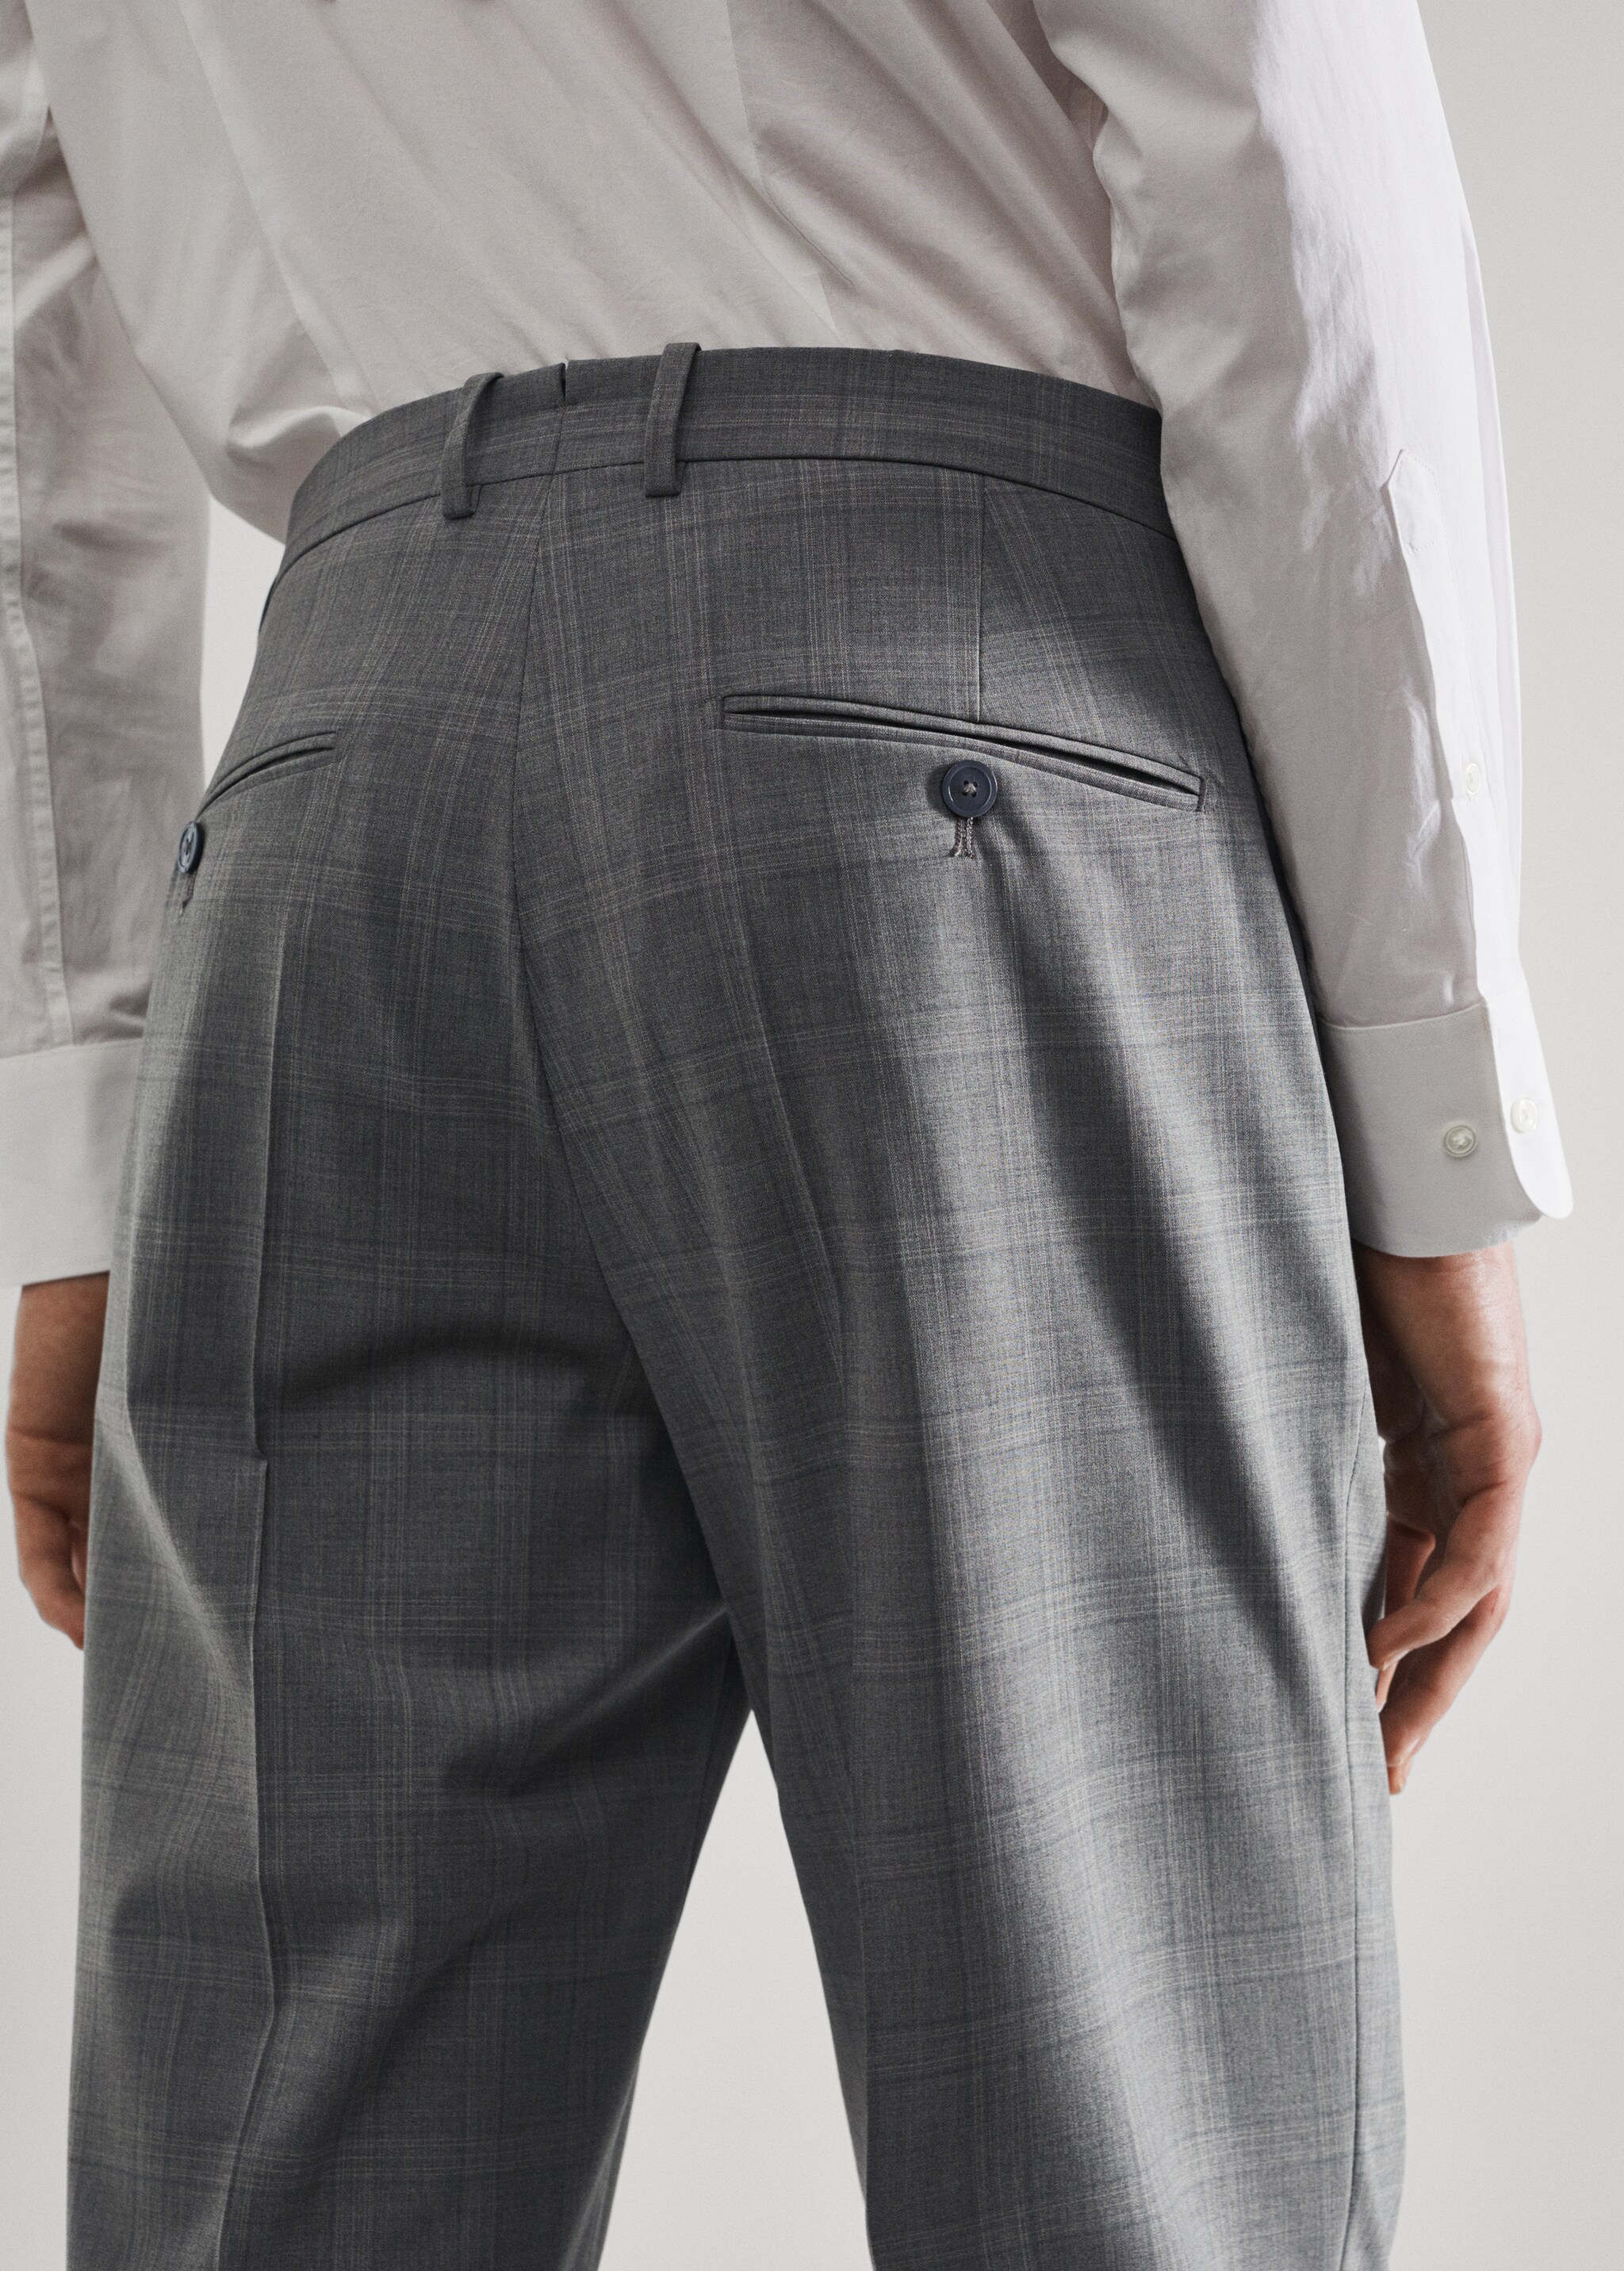 Pantalón traje slim fit lana - Detalle del artículo 2